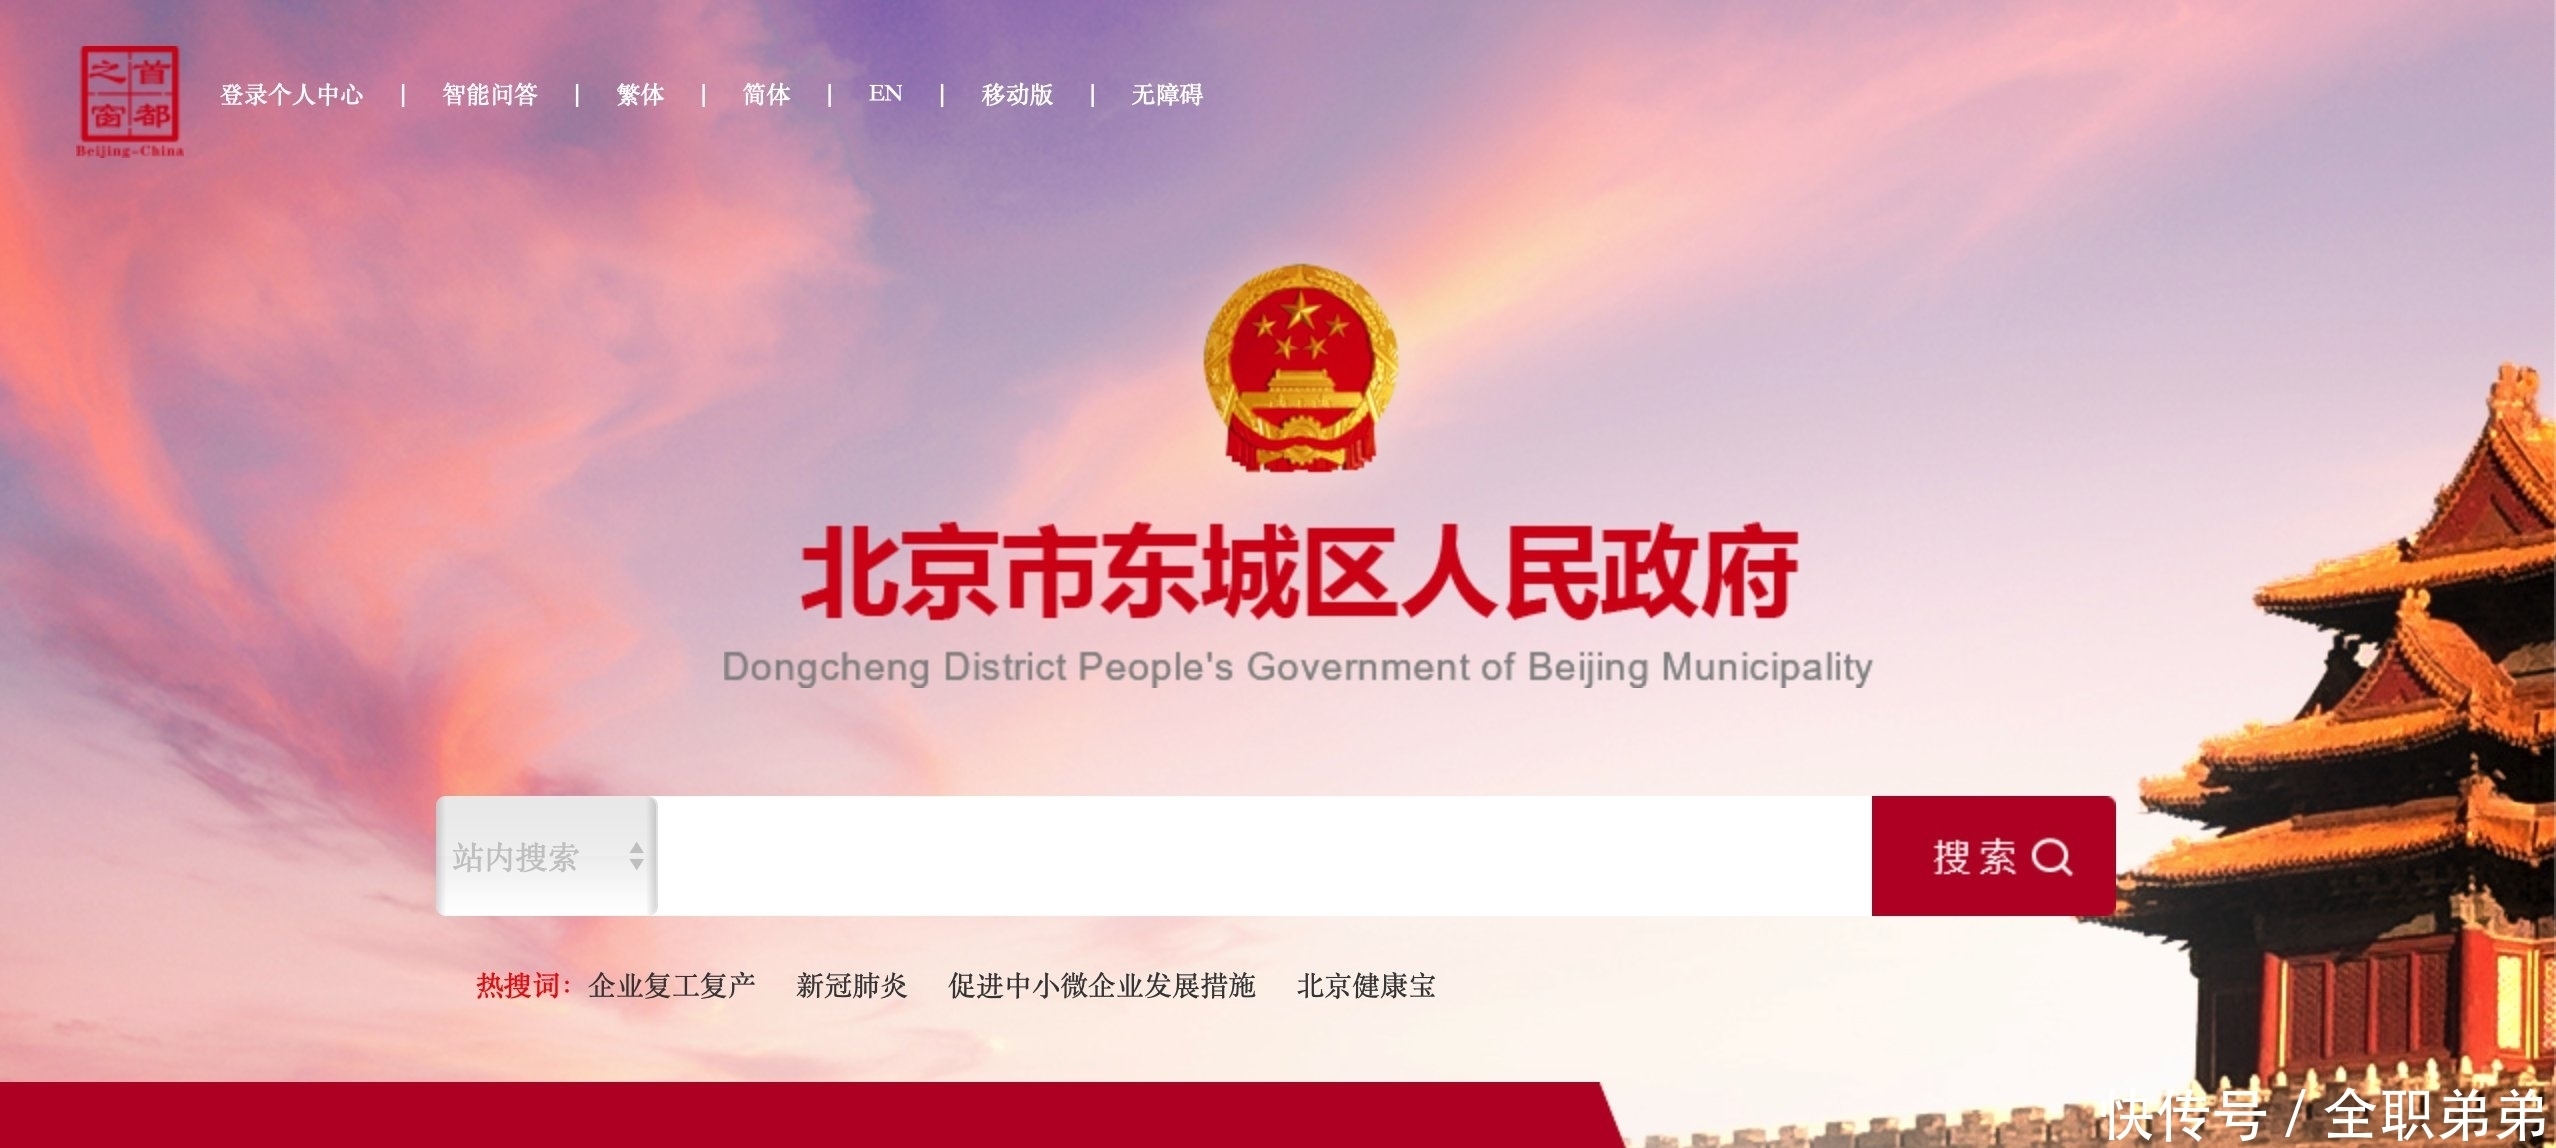 北京16区政府网站改版,首屏有了个性化形象